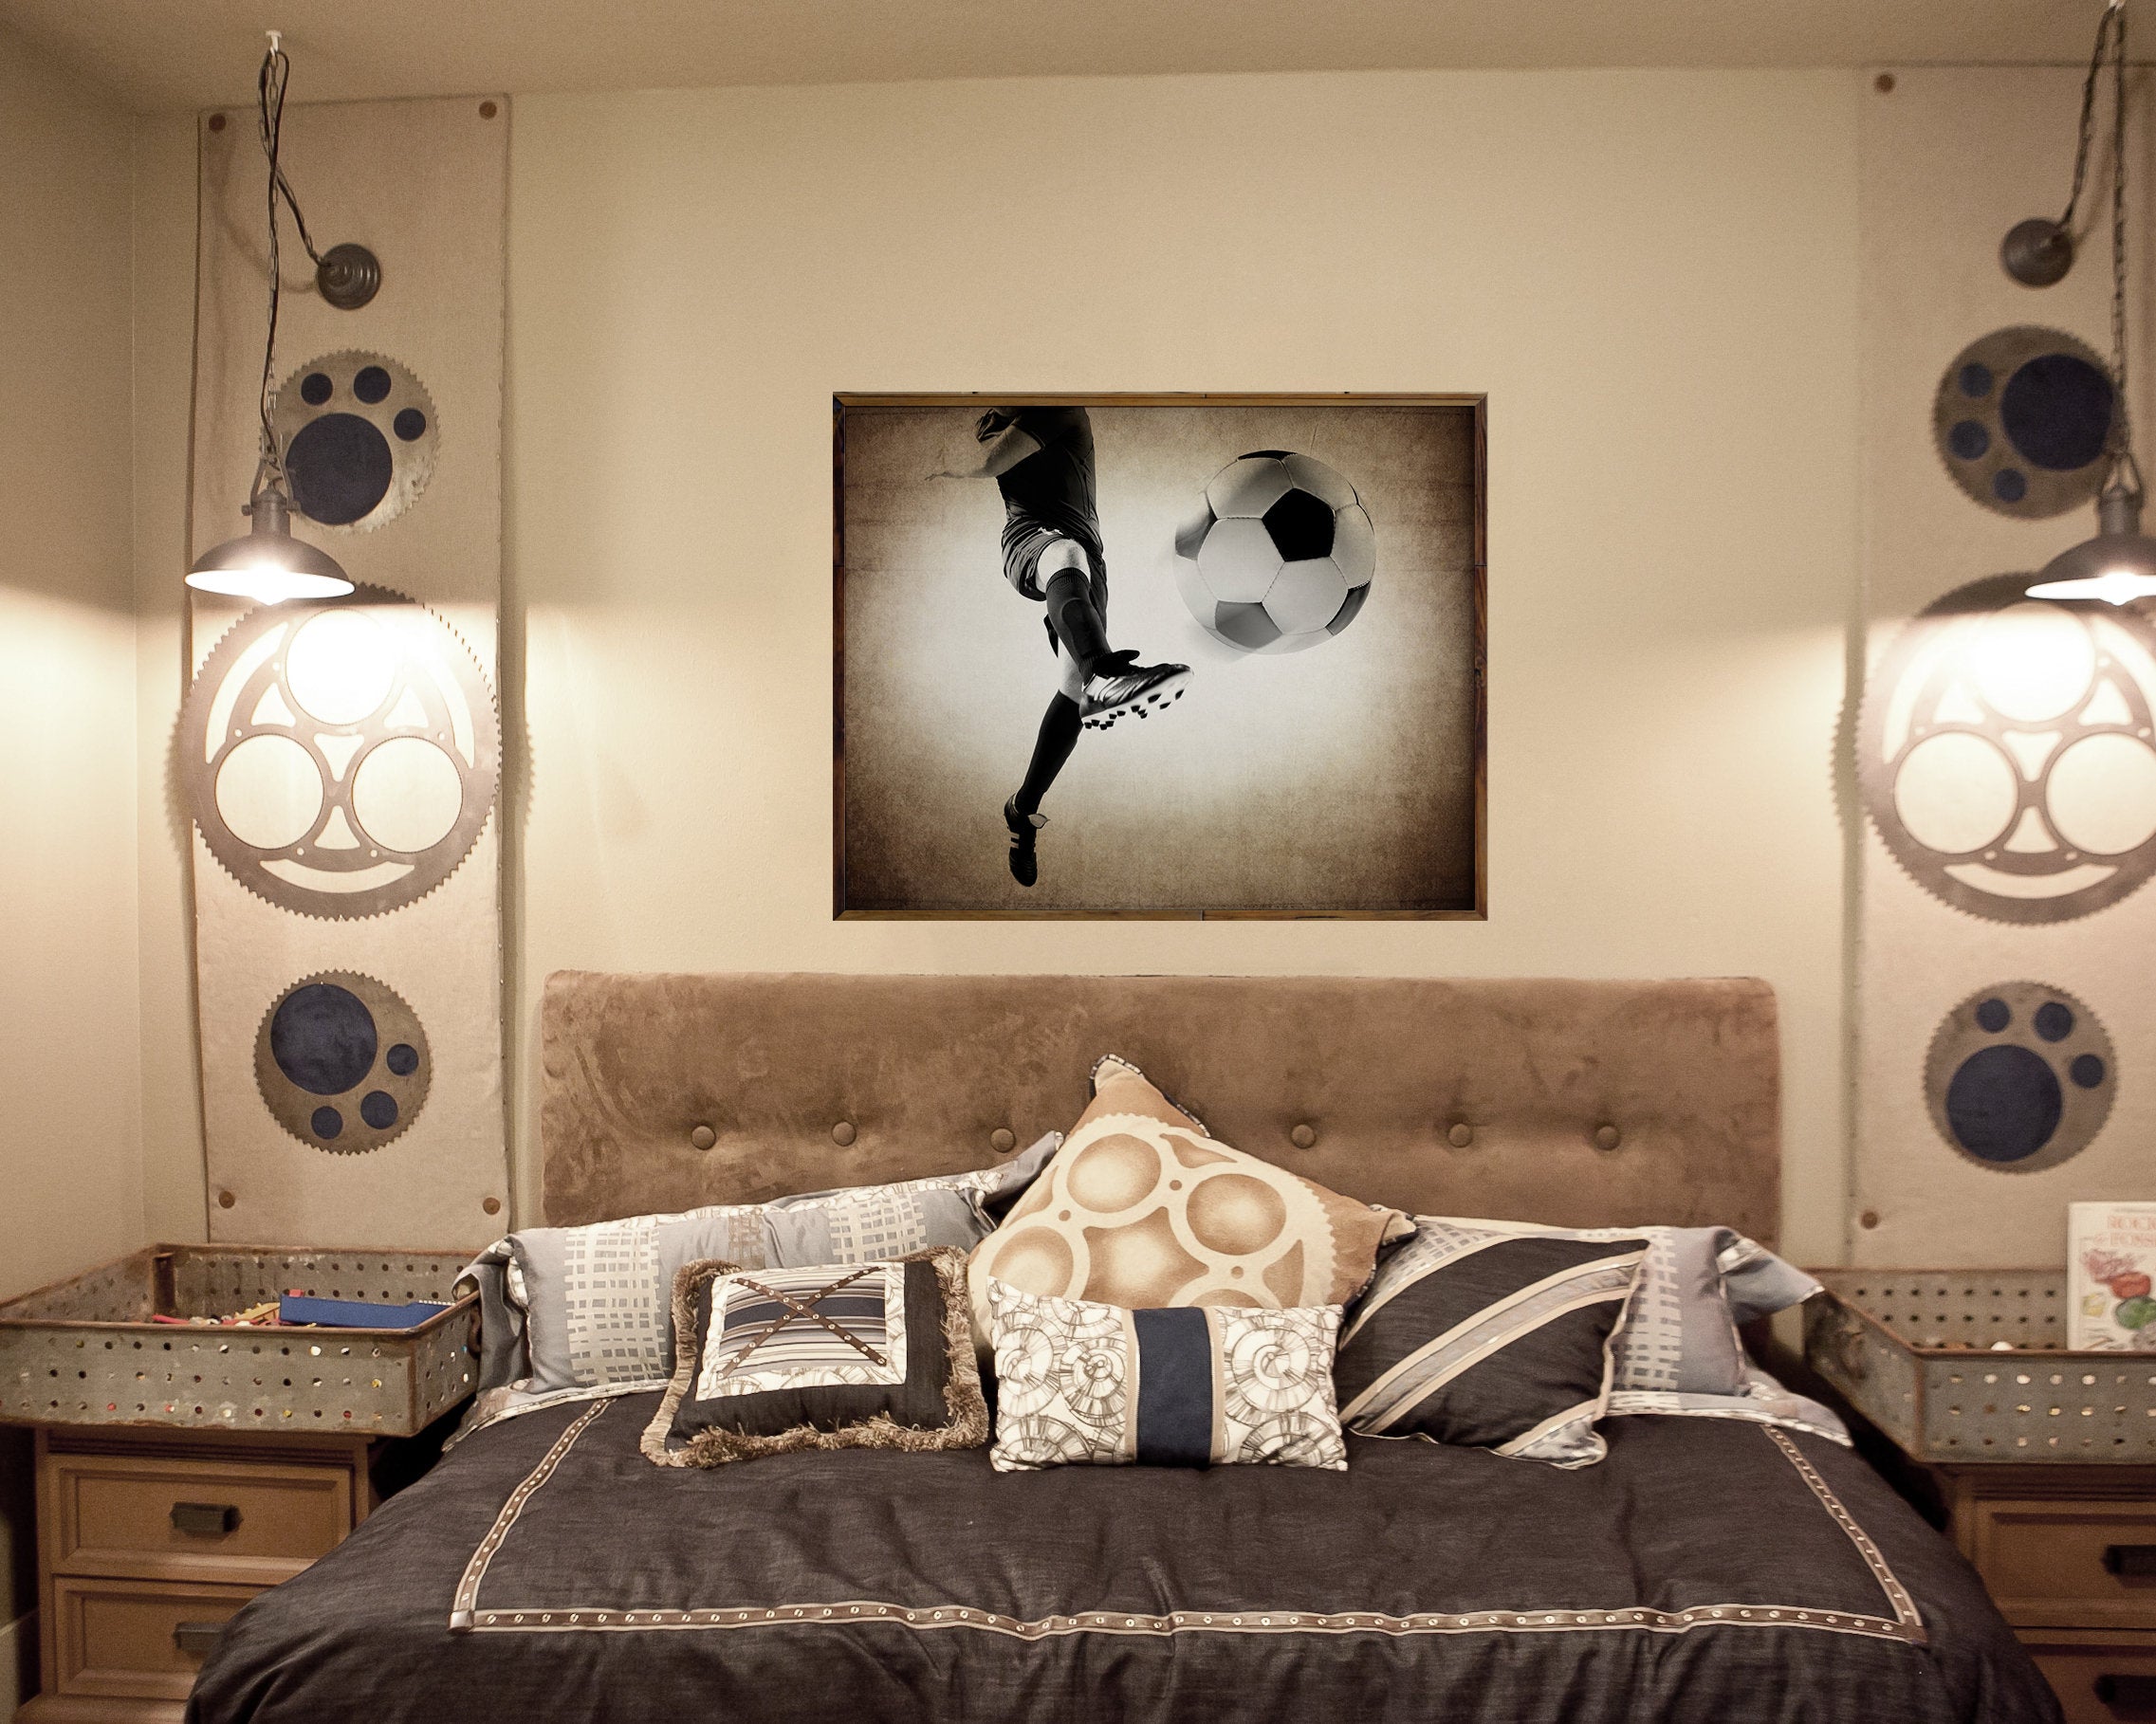 Kids Soccer Room art, Soccer Ball Kick Unframed Print or Canvas ...